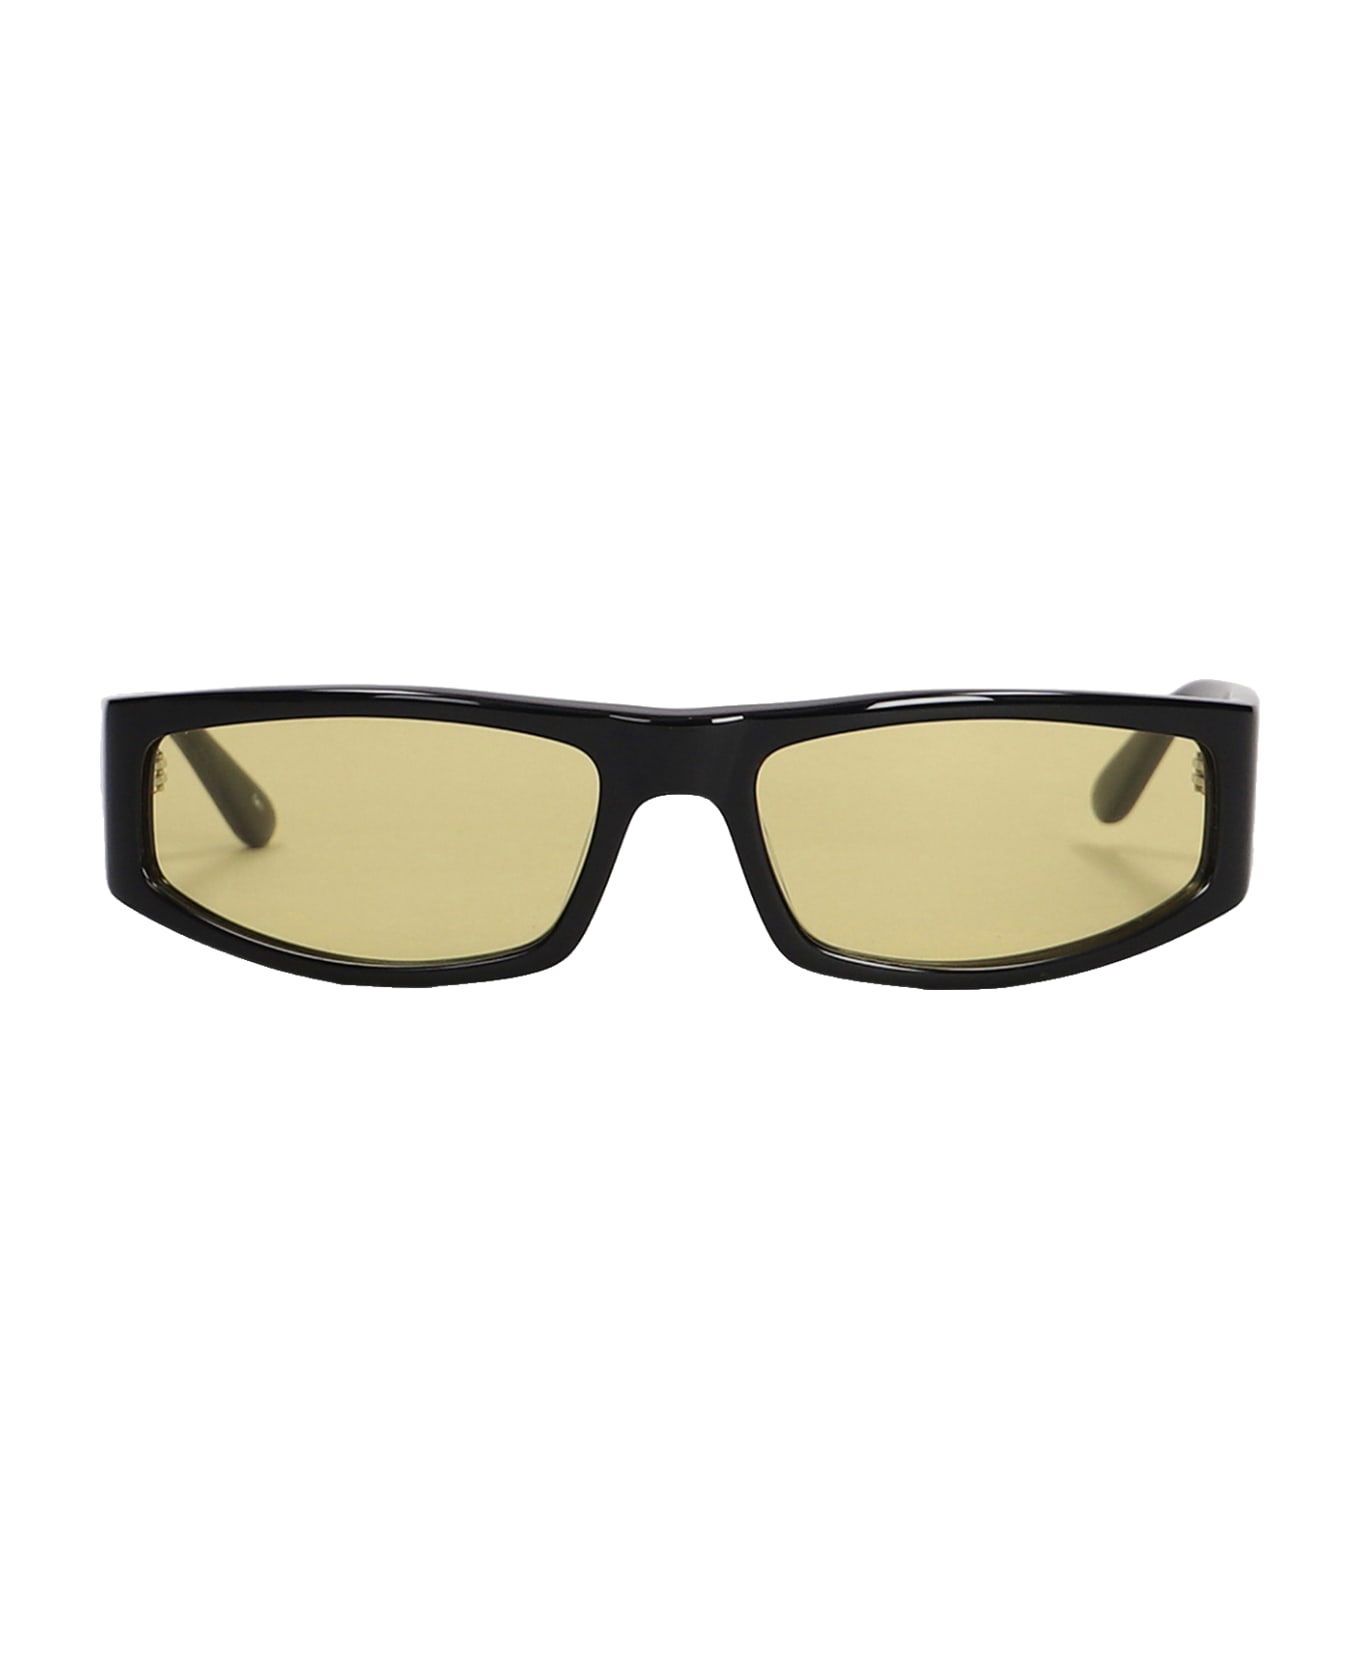 Courrèges Sunglasses In Black Acetate アイウェア